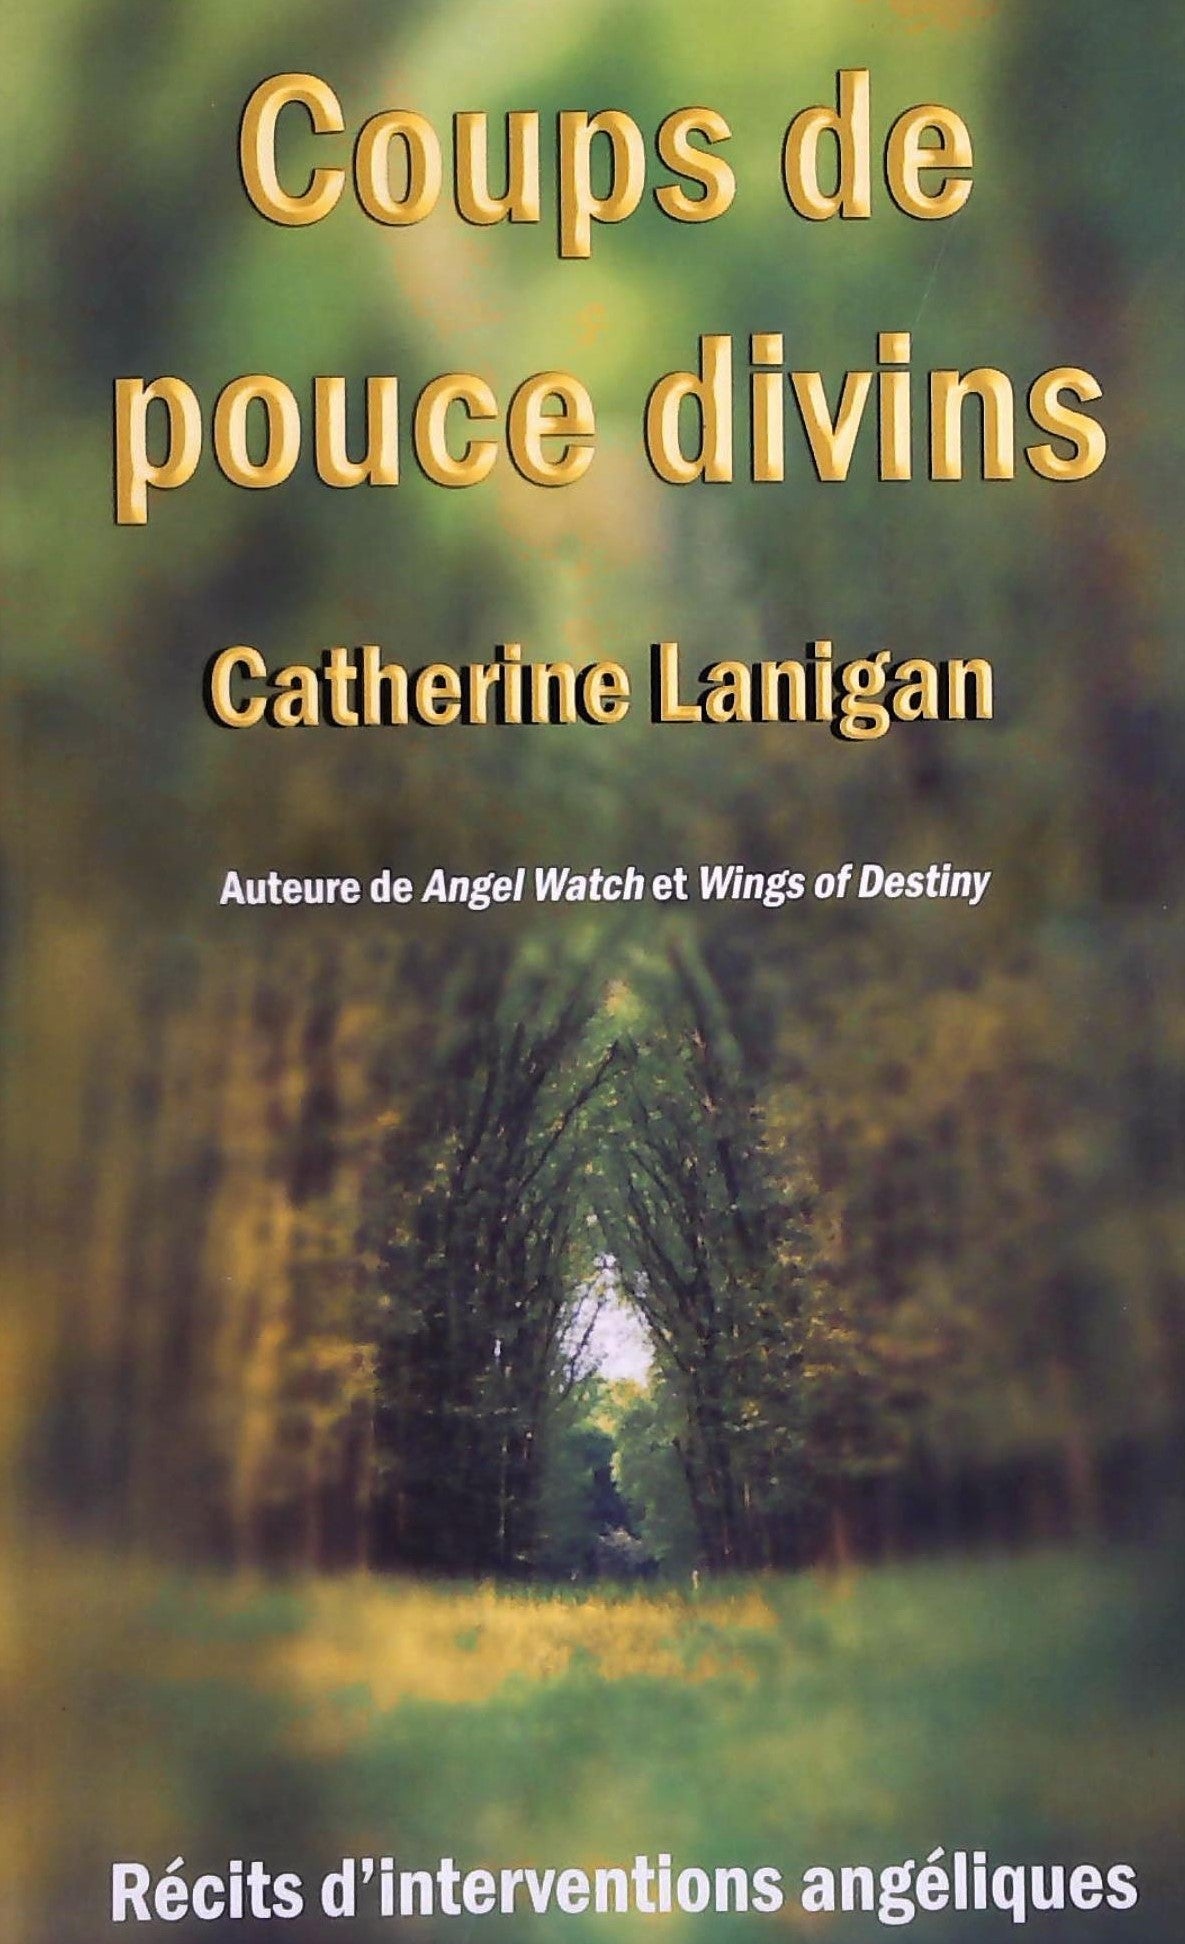 Livre ISBN 2895655219 Coups de pouce divins (Catherine Lanigan)